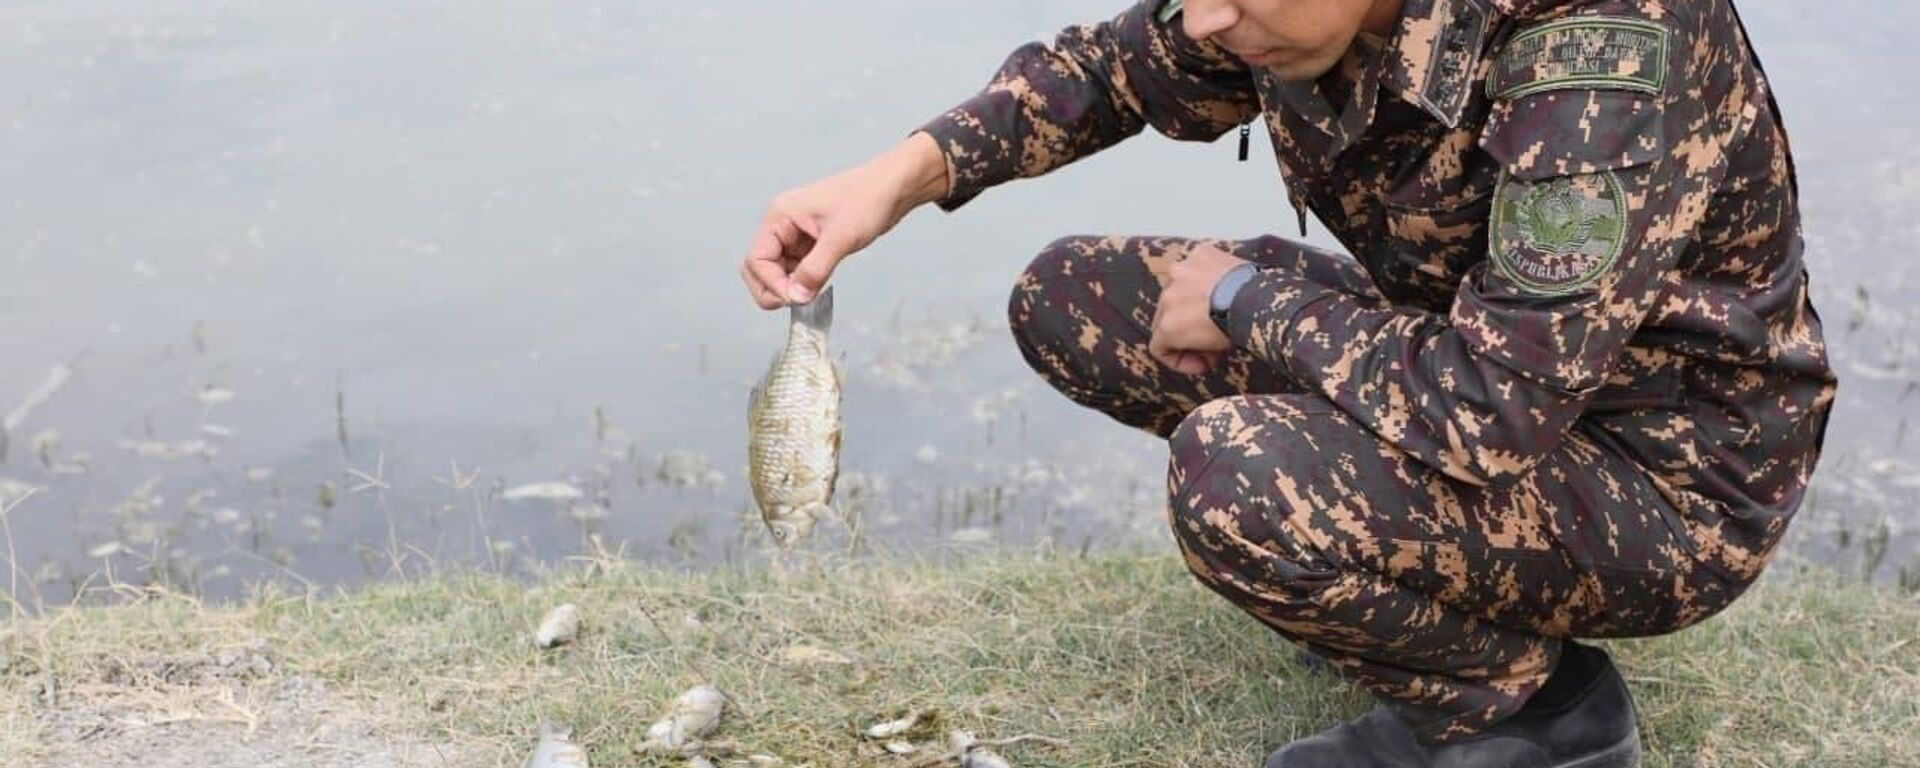 Массовый замор рыбы произошел на участке реки Зарафшан - Sputnik Ўзбекистон, 1920, 09.10.2021